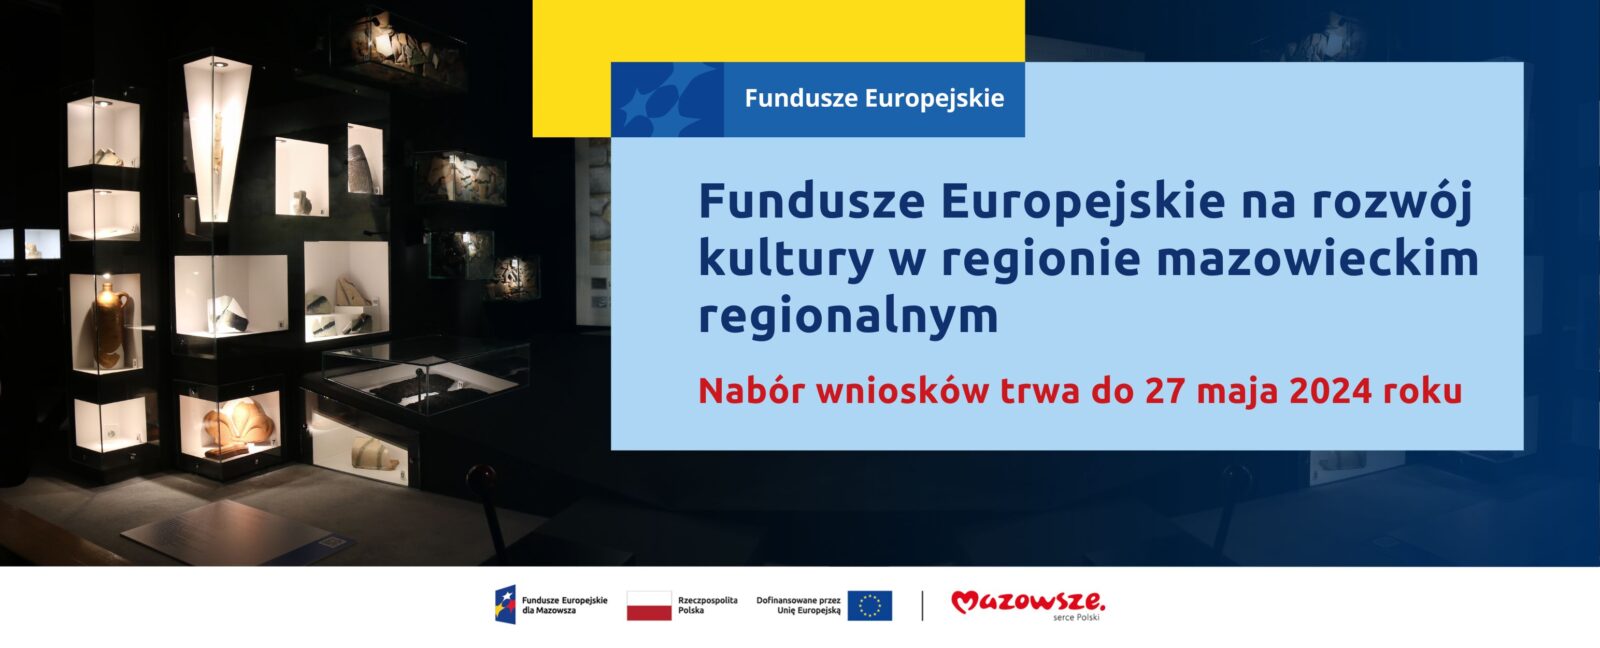 Na grafice znajduje się hasło: Fundusze Europejskie na rozwój kultury w regionie mazowieckim regionalnym. Nabór wniosków trwa do 27 maja 2024 roku. W tle zdjęcie wystawy archeologicznej.